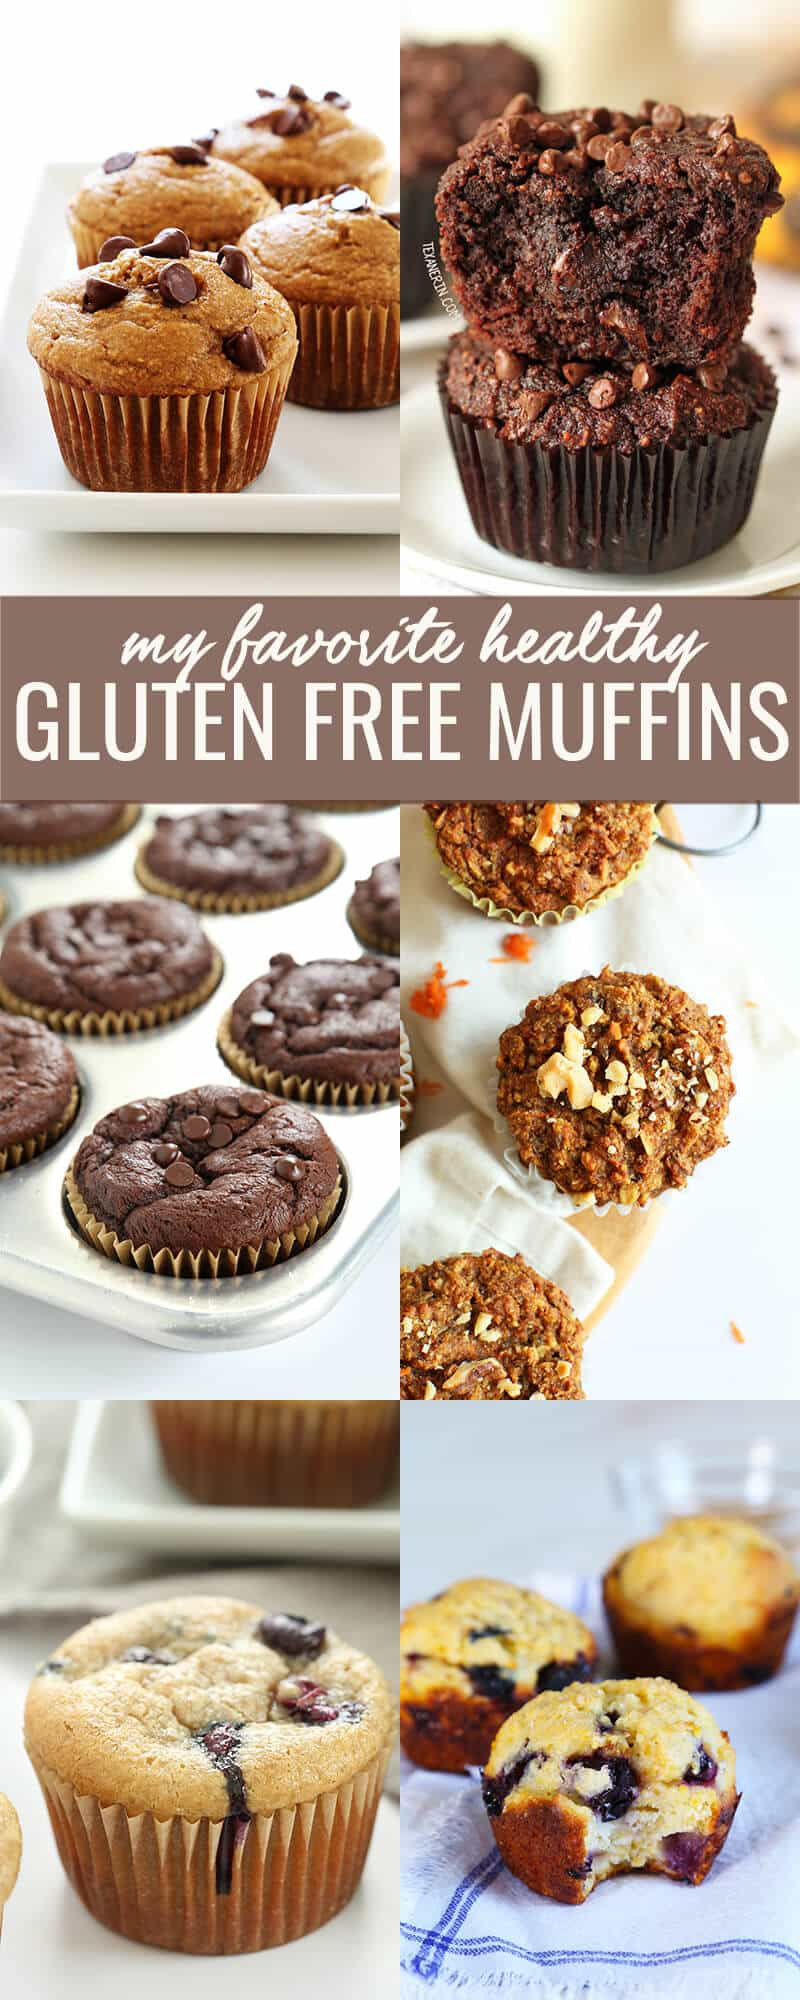 Gluten Free Muffins Recipes
 Healthy Gluten Free Muffins